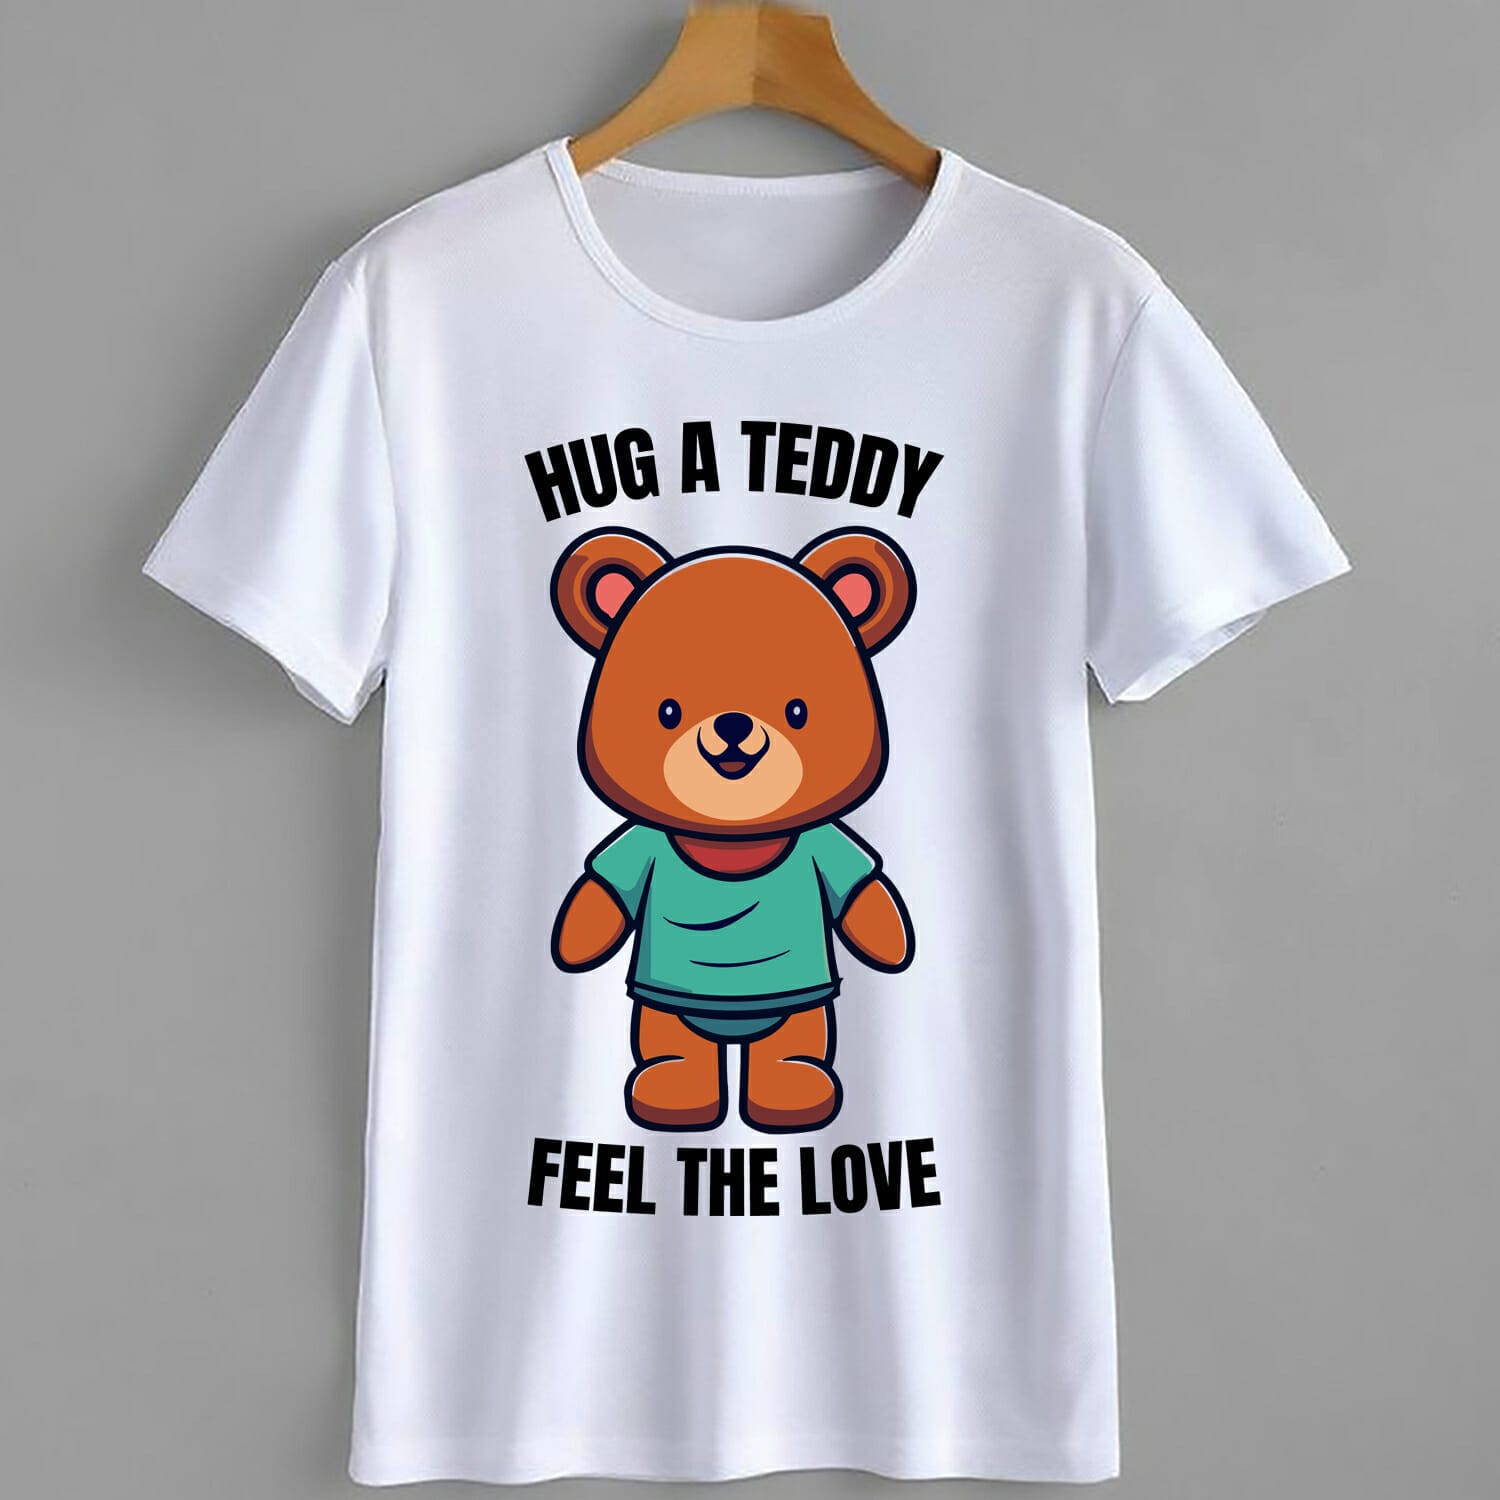 Hug A Teddy Feel The Love T-Shirt Design